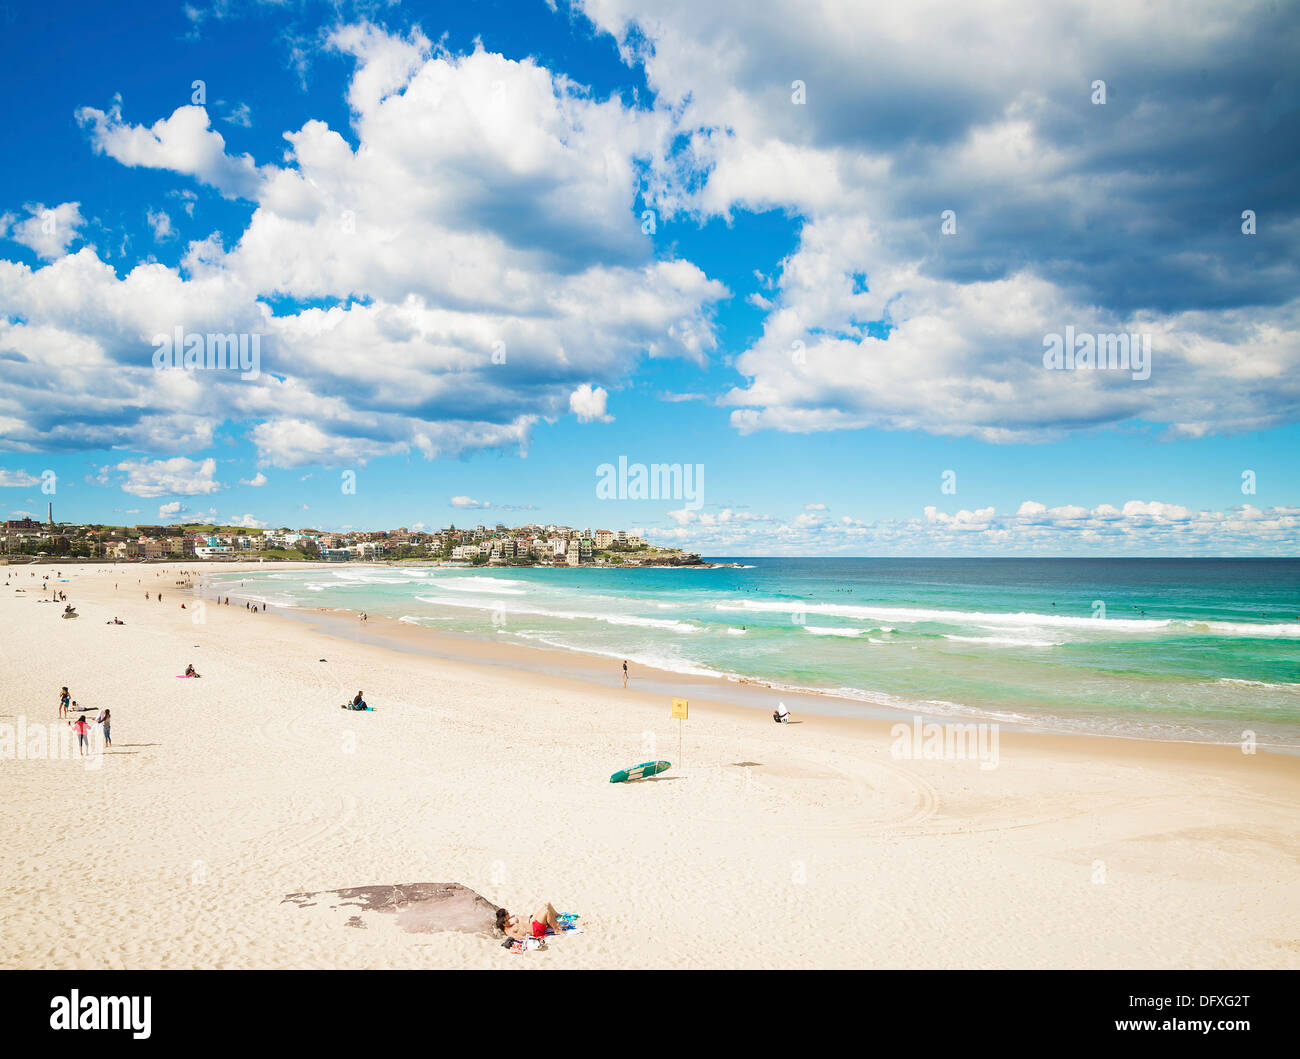 bondi beach by day in sydney australia Stock Photo